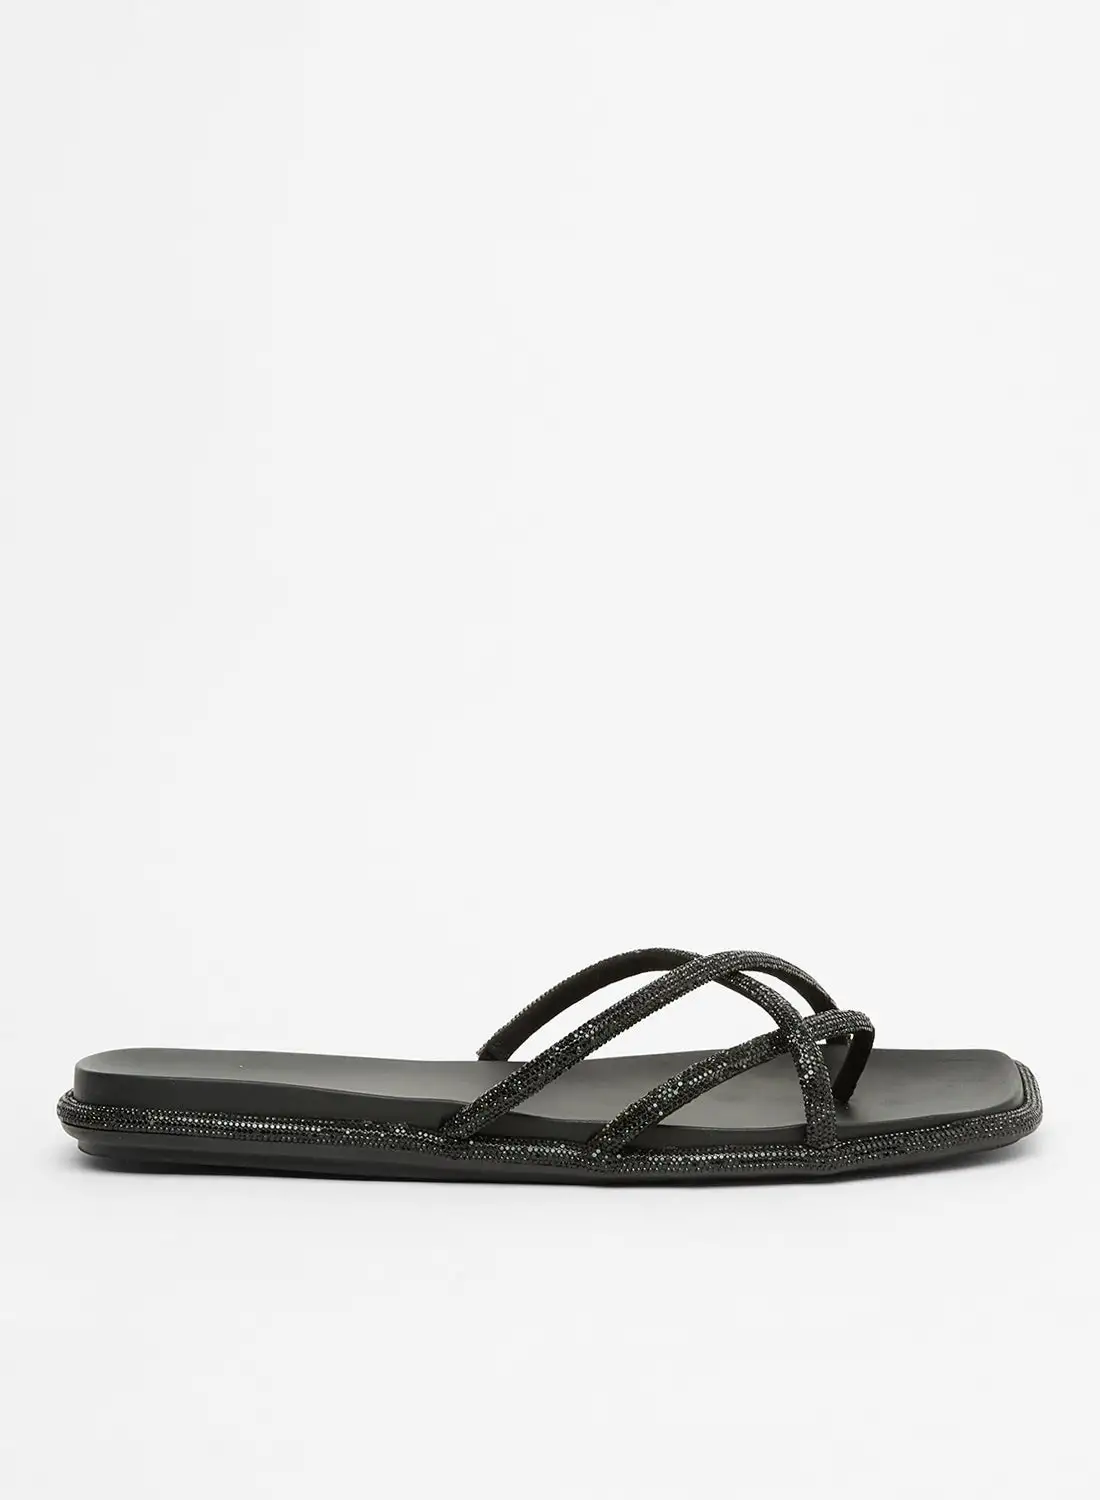 ALDO Aseago Flat Sandals Black